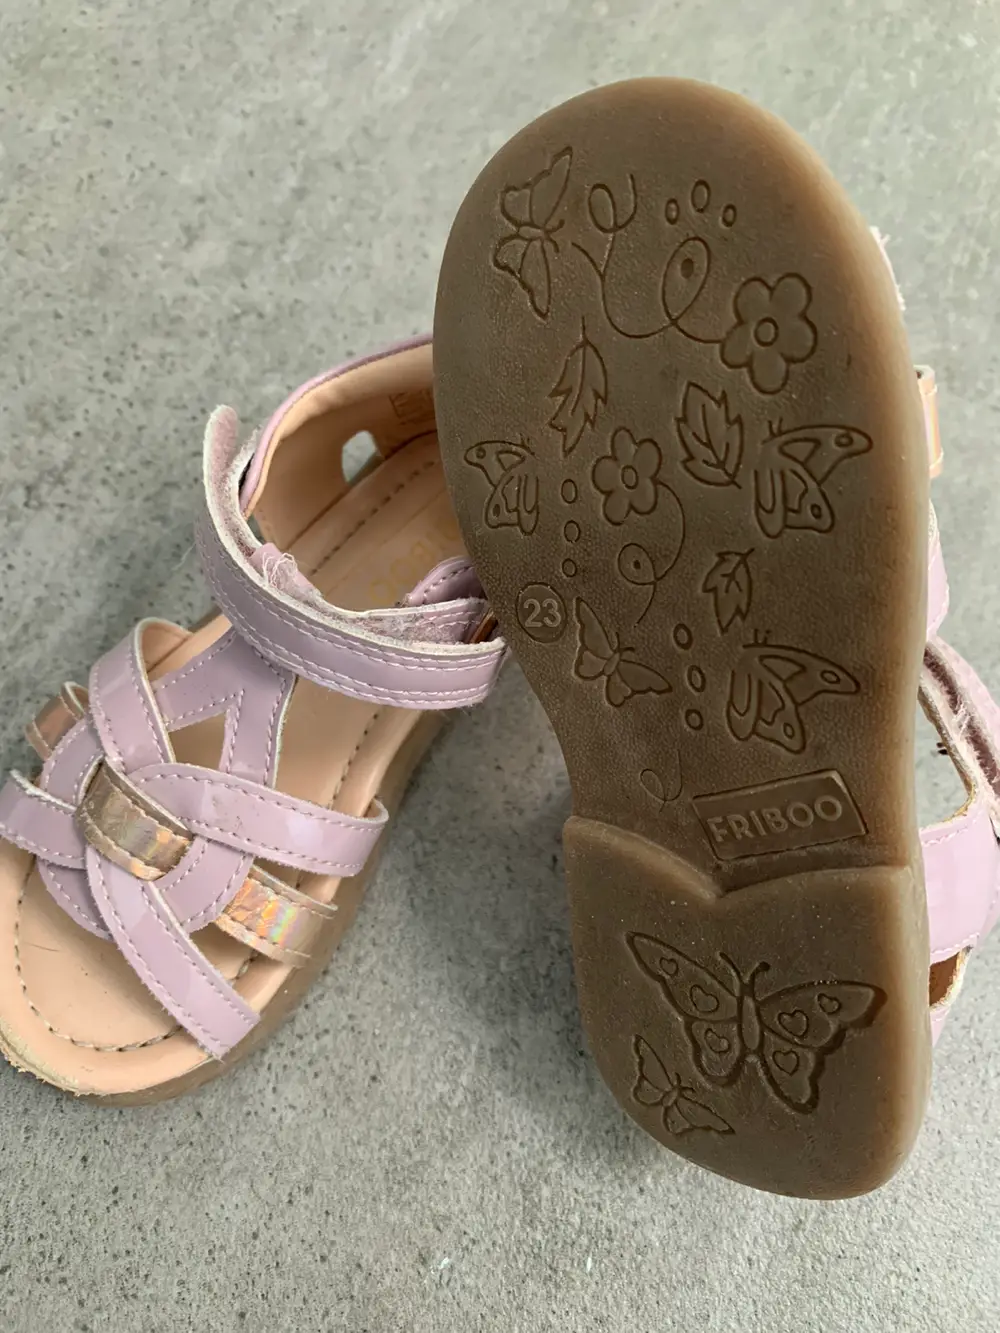 Køb Friboo Ballerina sko størrelse 23 af Katerina på · Shop secondhand til børn, mor og bolig